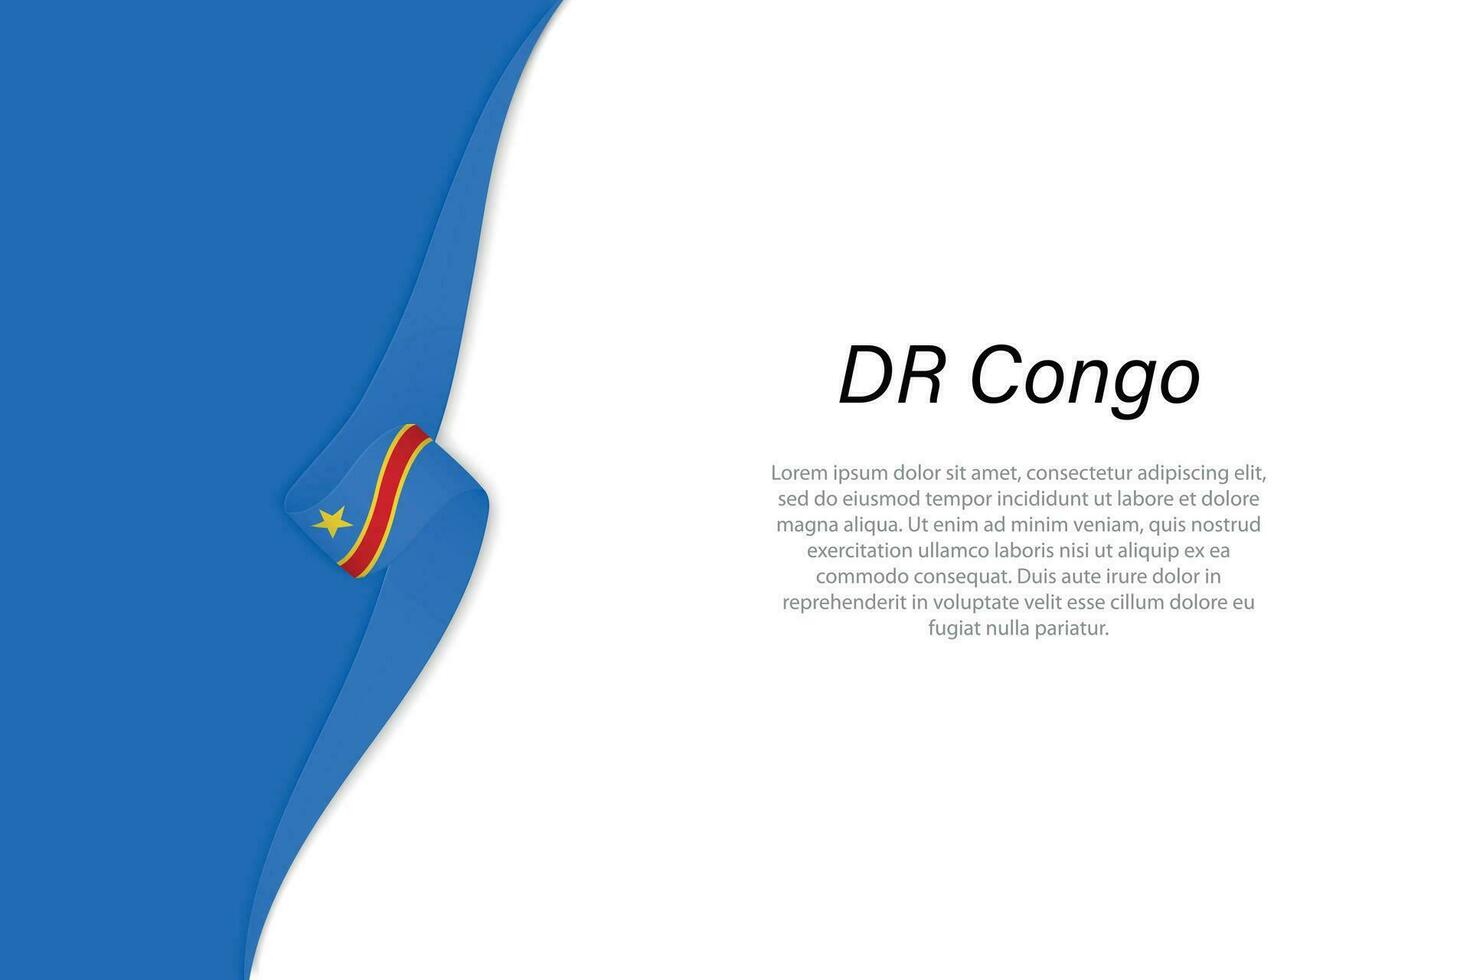 ola bandera de Dr congo con copyspace antecedentes vector